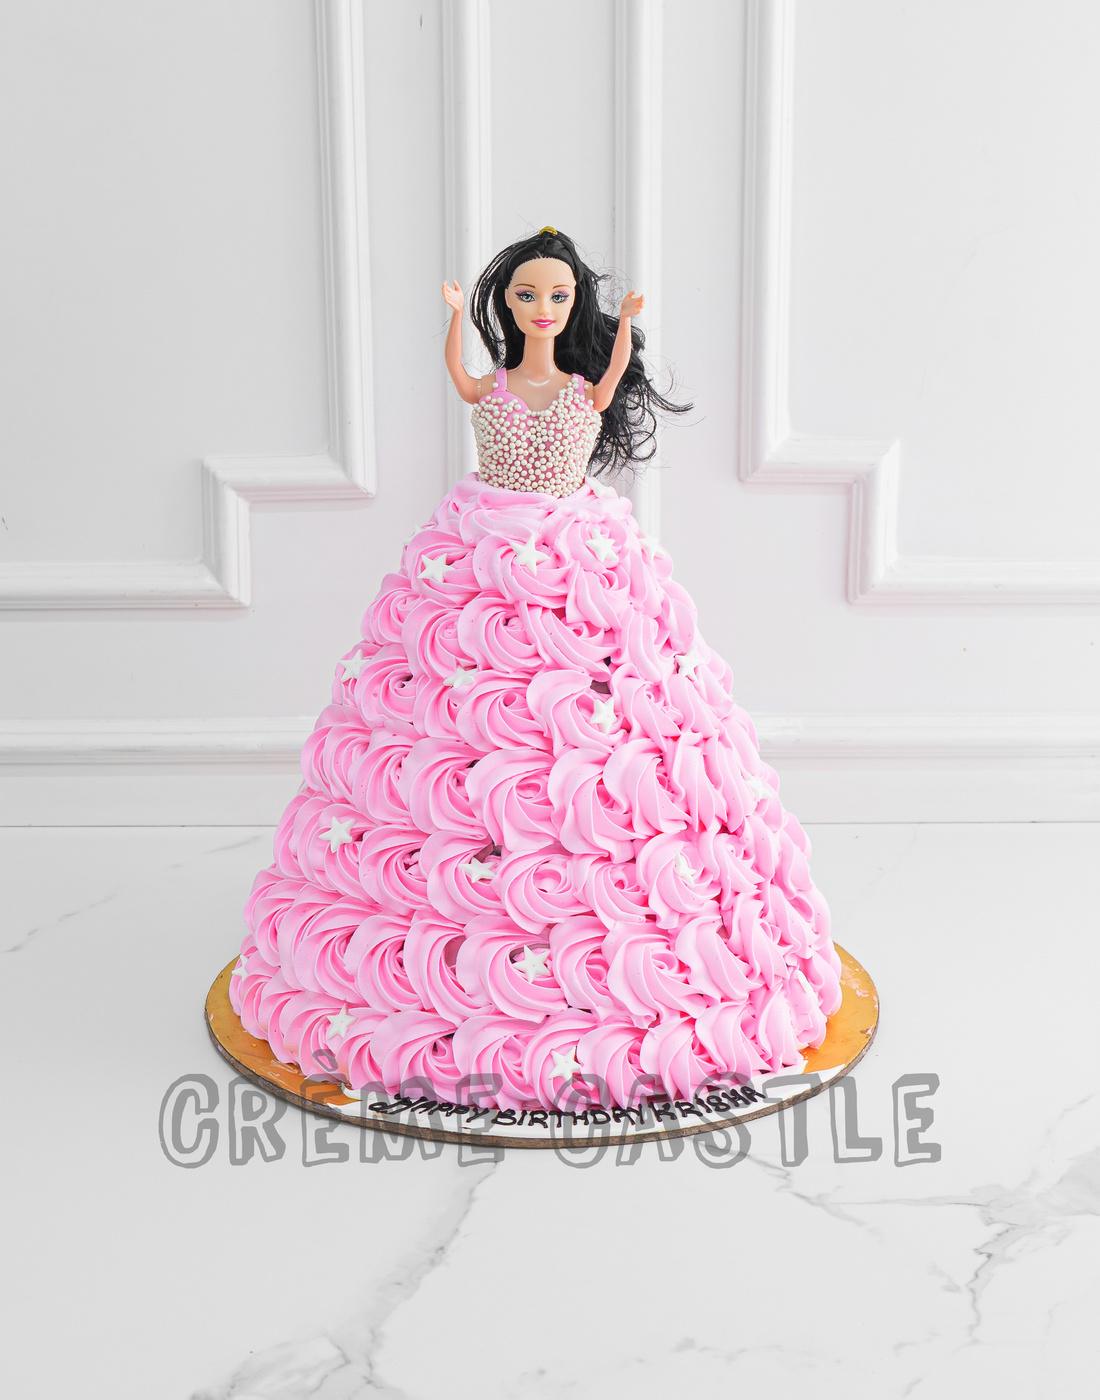 Cakes by Vish - pink &white princess Barbi doll cake 2kg... | Facebook